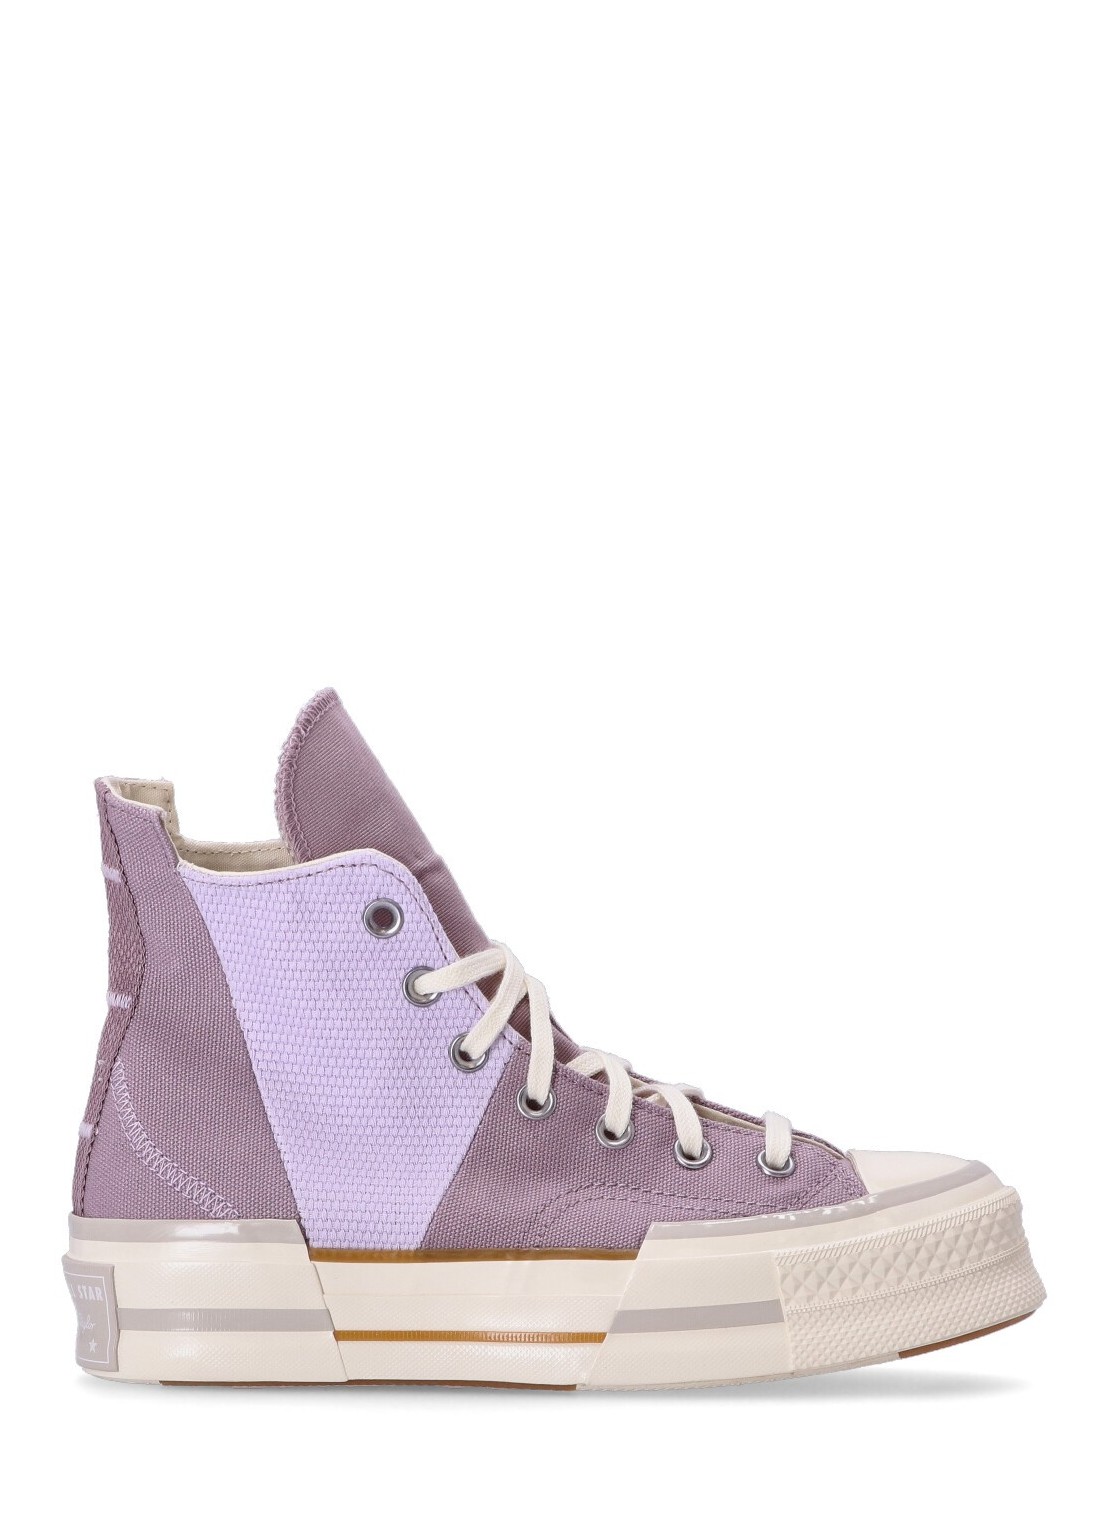 Sneaker converse sneaker woman chuck 70 plus summer utility a03499c lucid lilac vapor violet egret t